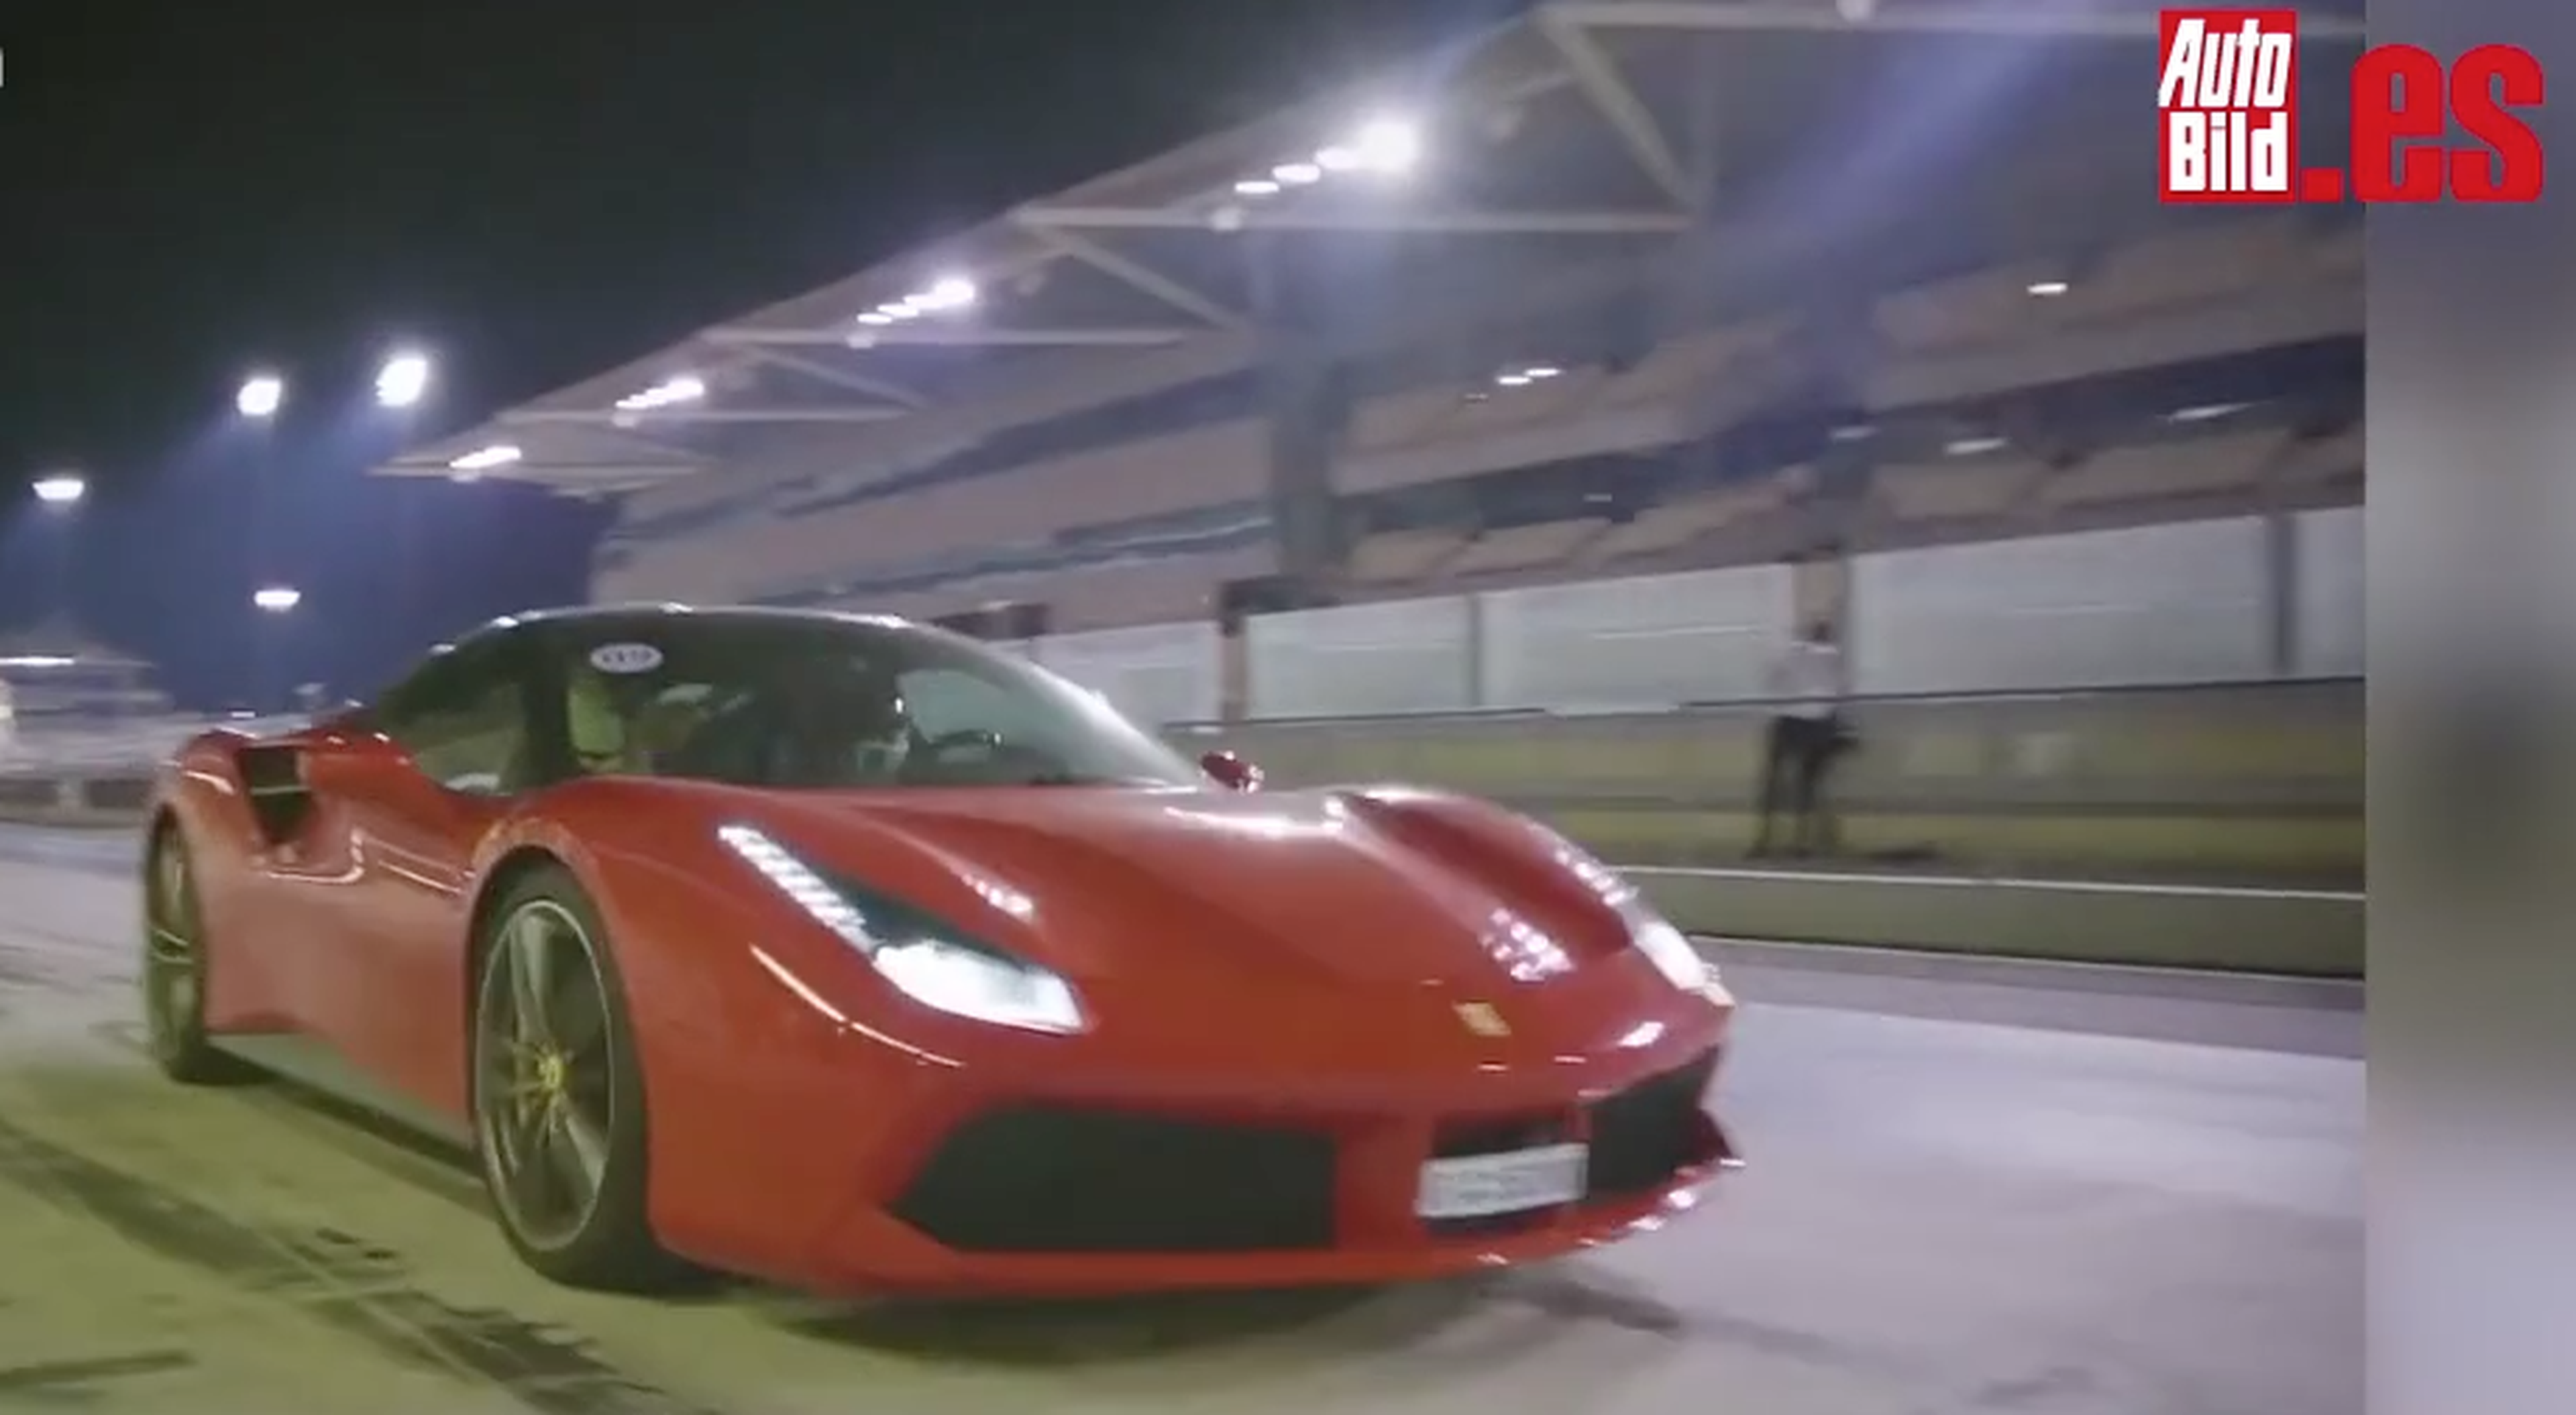 Vídeo: El Ferrari 488 GTB levanta pasiones. ¡Mira qué caras!